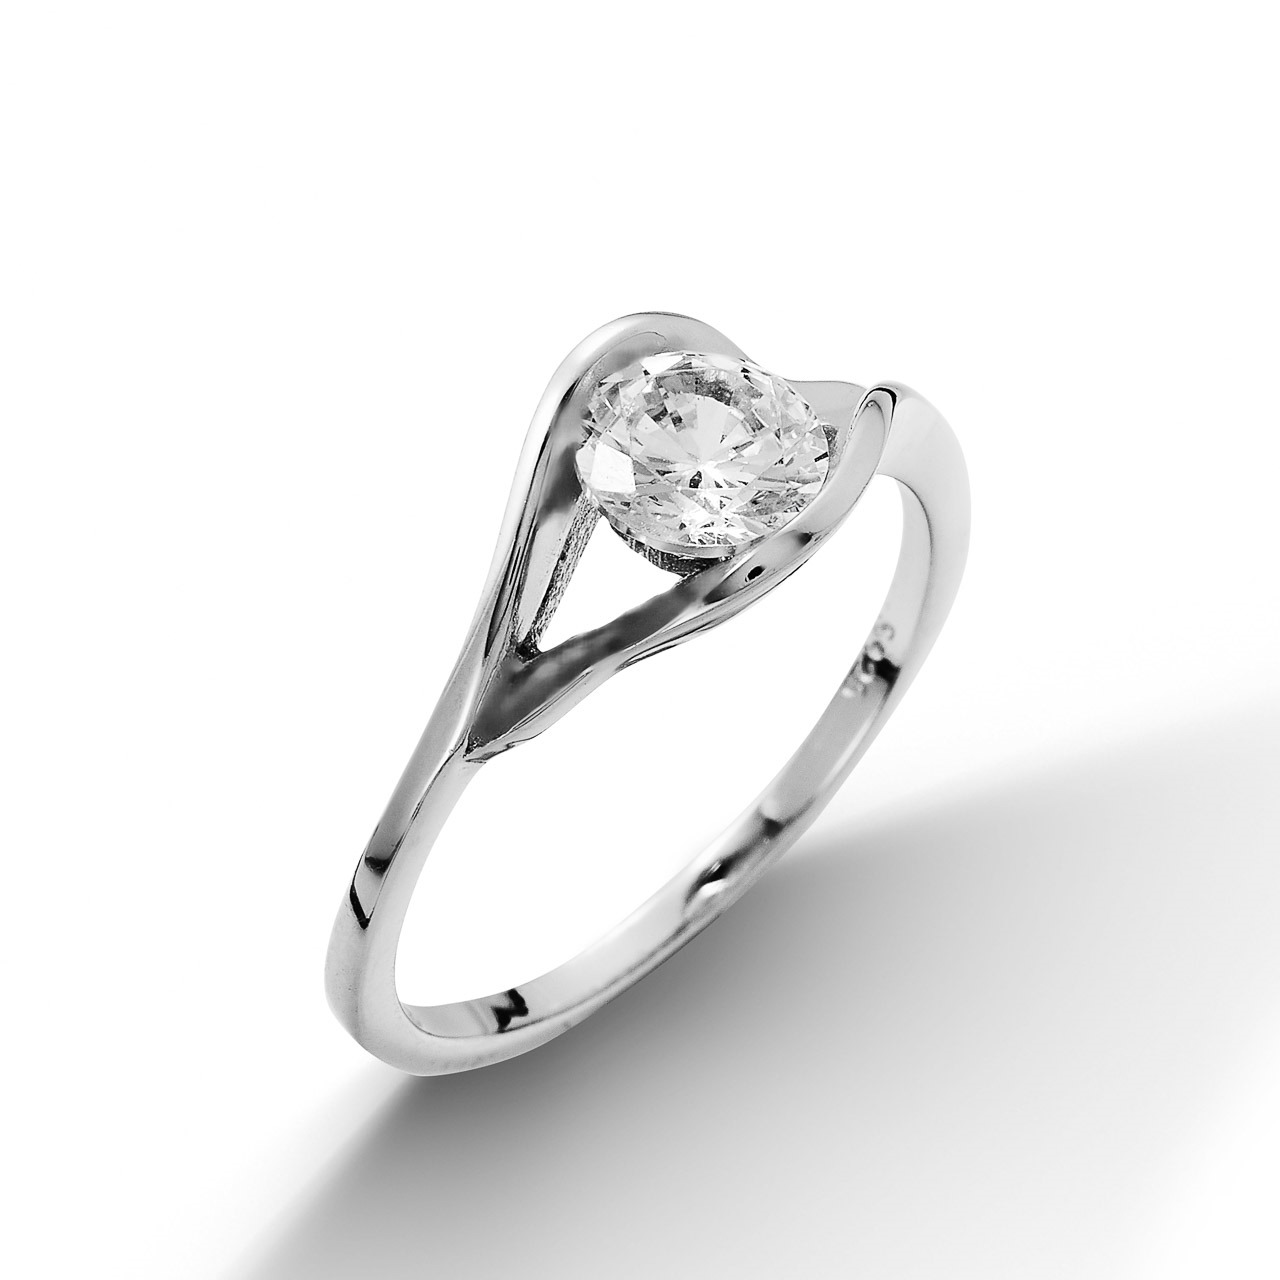 NUBIS® Stříbrný prsten se zirkonem, vel. 55 - velikost 55 - NB-5028-56